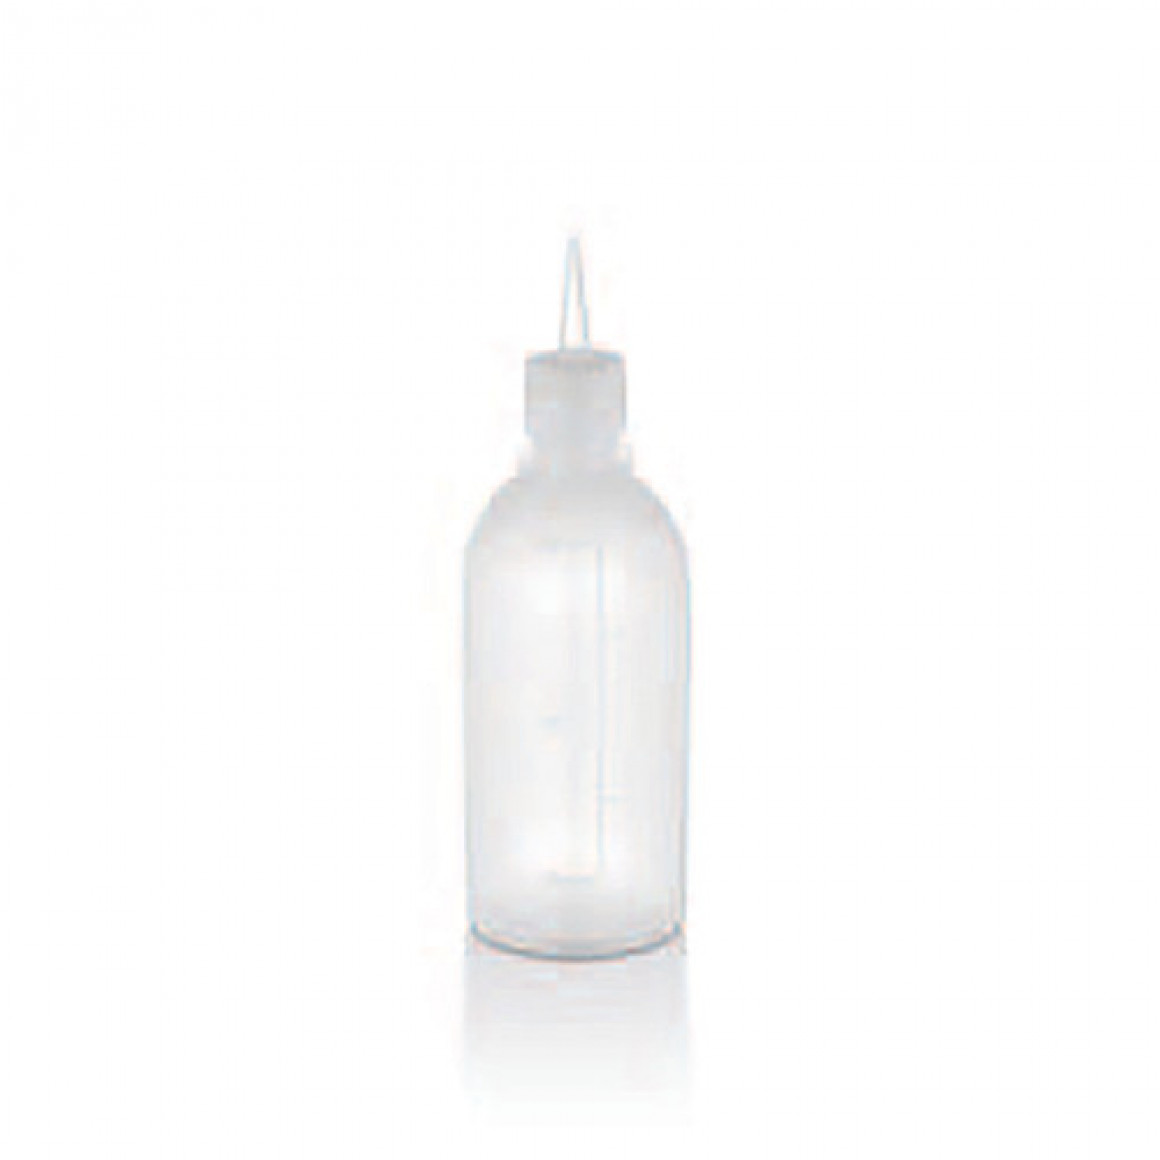 Squeeze bottle dispenser for oil 500 ml